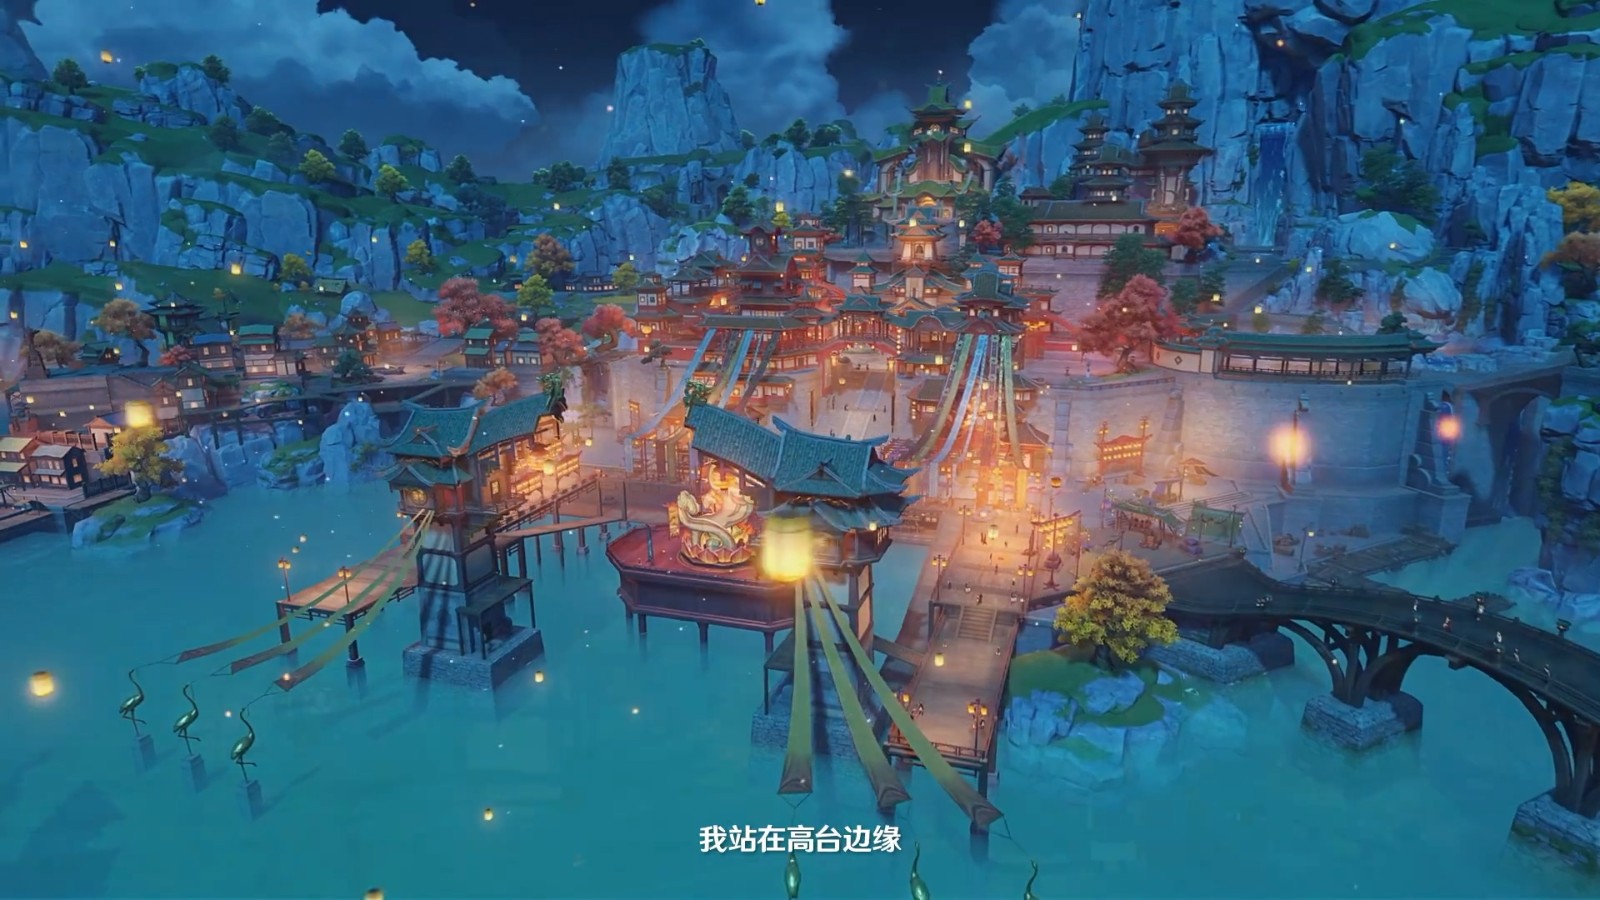 《本神》2.4版本“飞彩镌流年” 将于1月5日上线